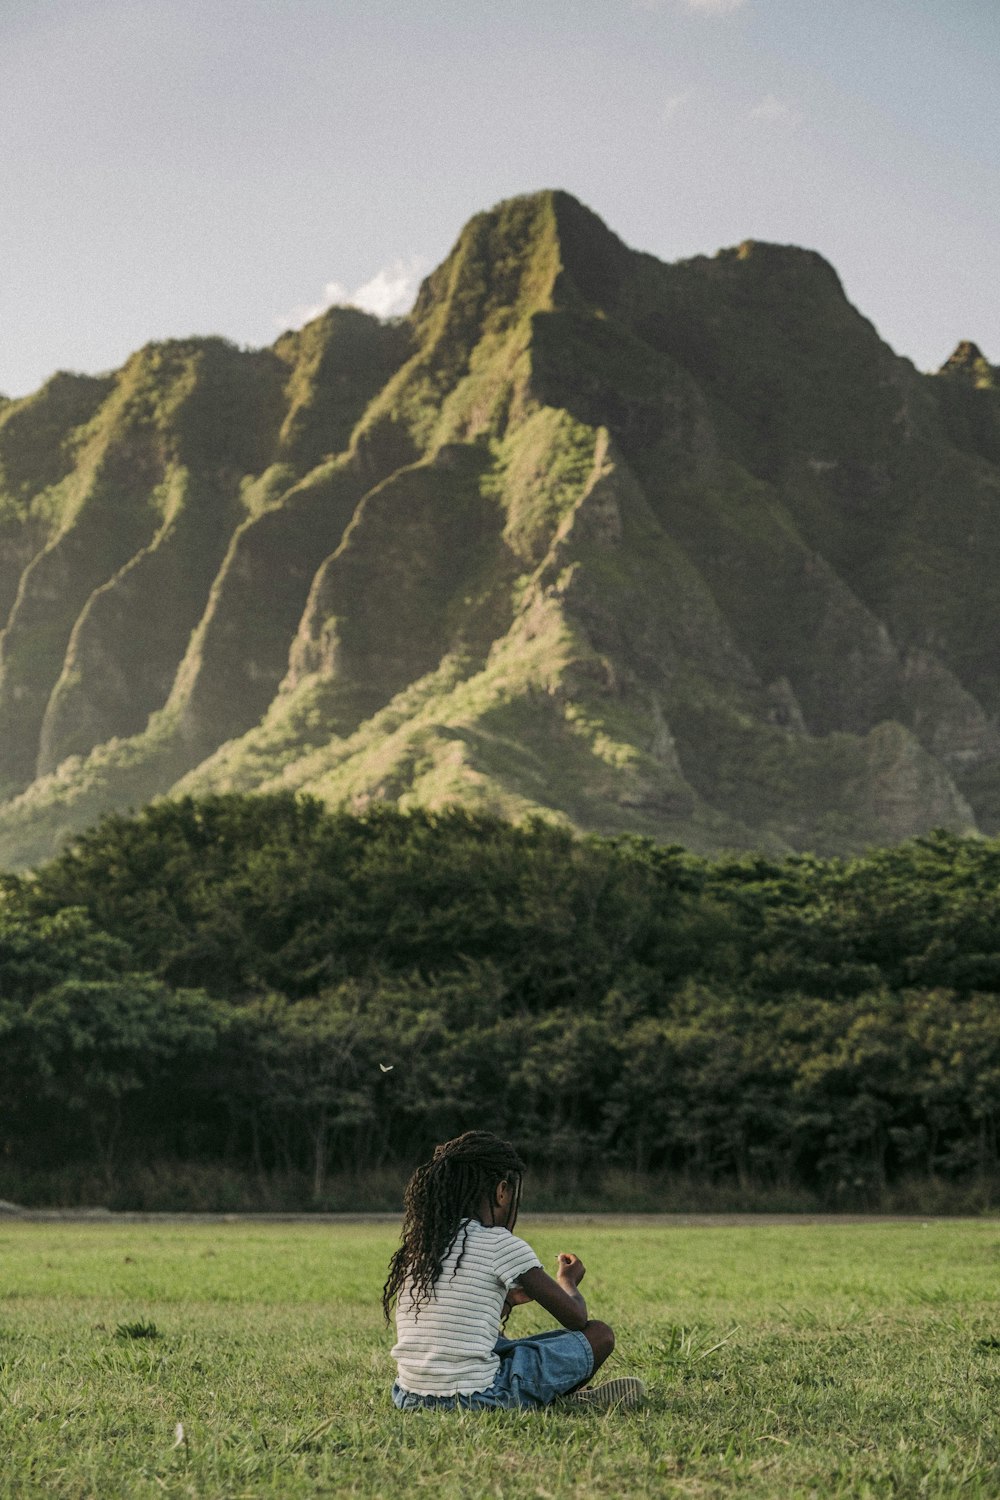 Una persona seduta in un campo erboso con una montagna sullo sfondo